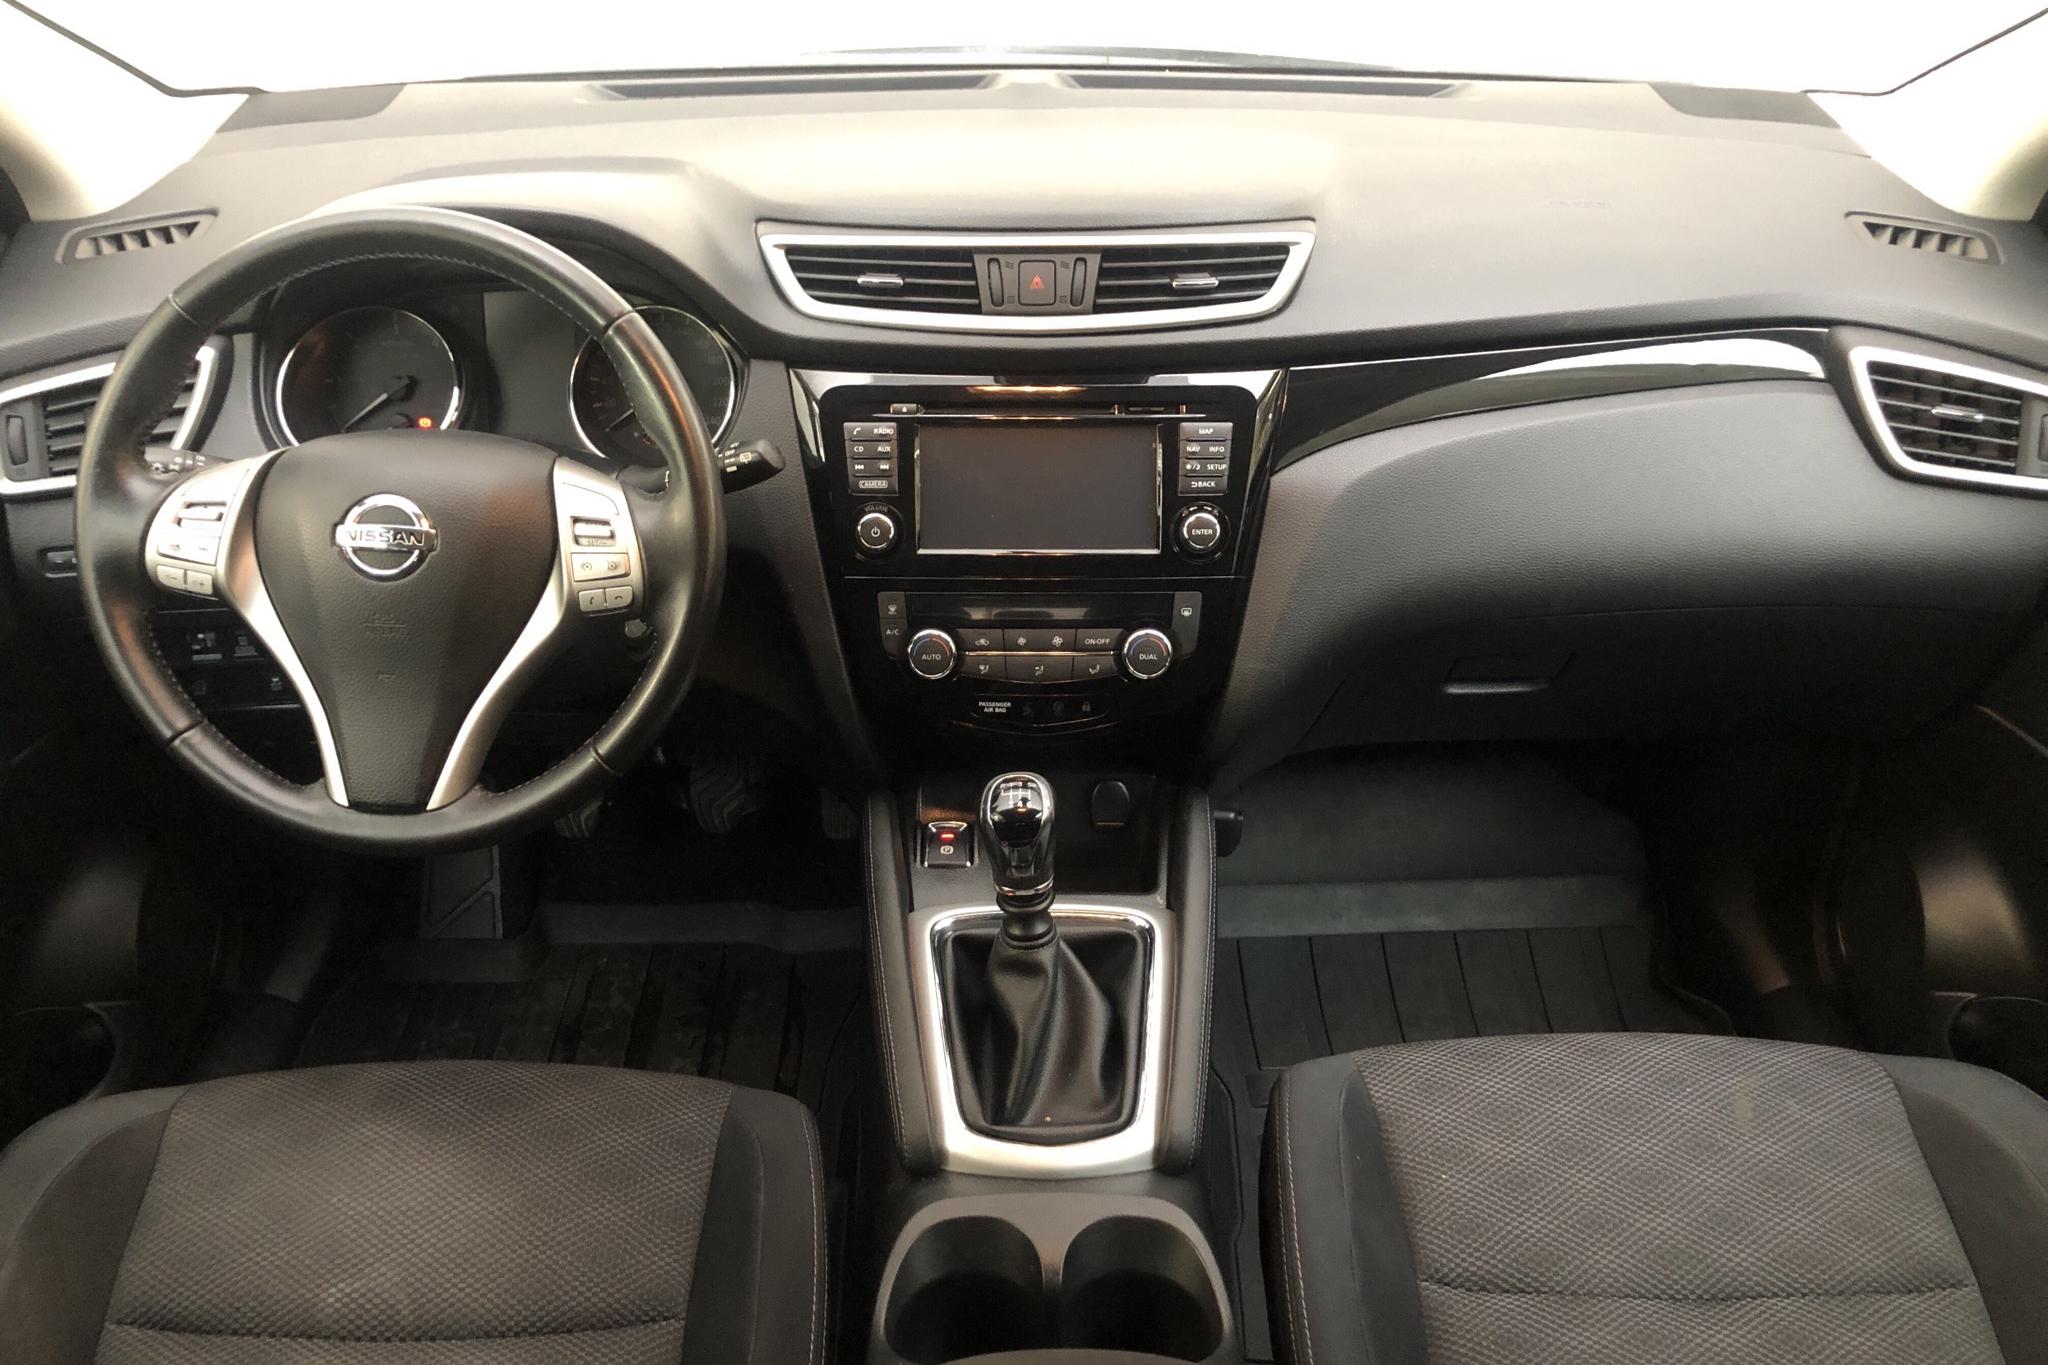 Nissan Qashqai 1.6 dCi 4x4 (130hk) - 6 441 mil - Manuell - vit - 2016